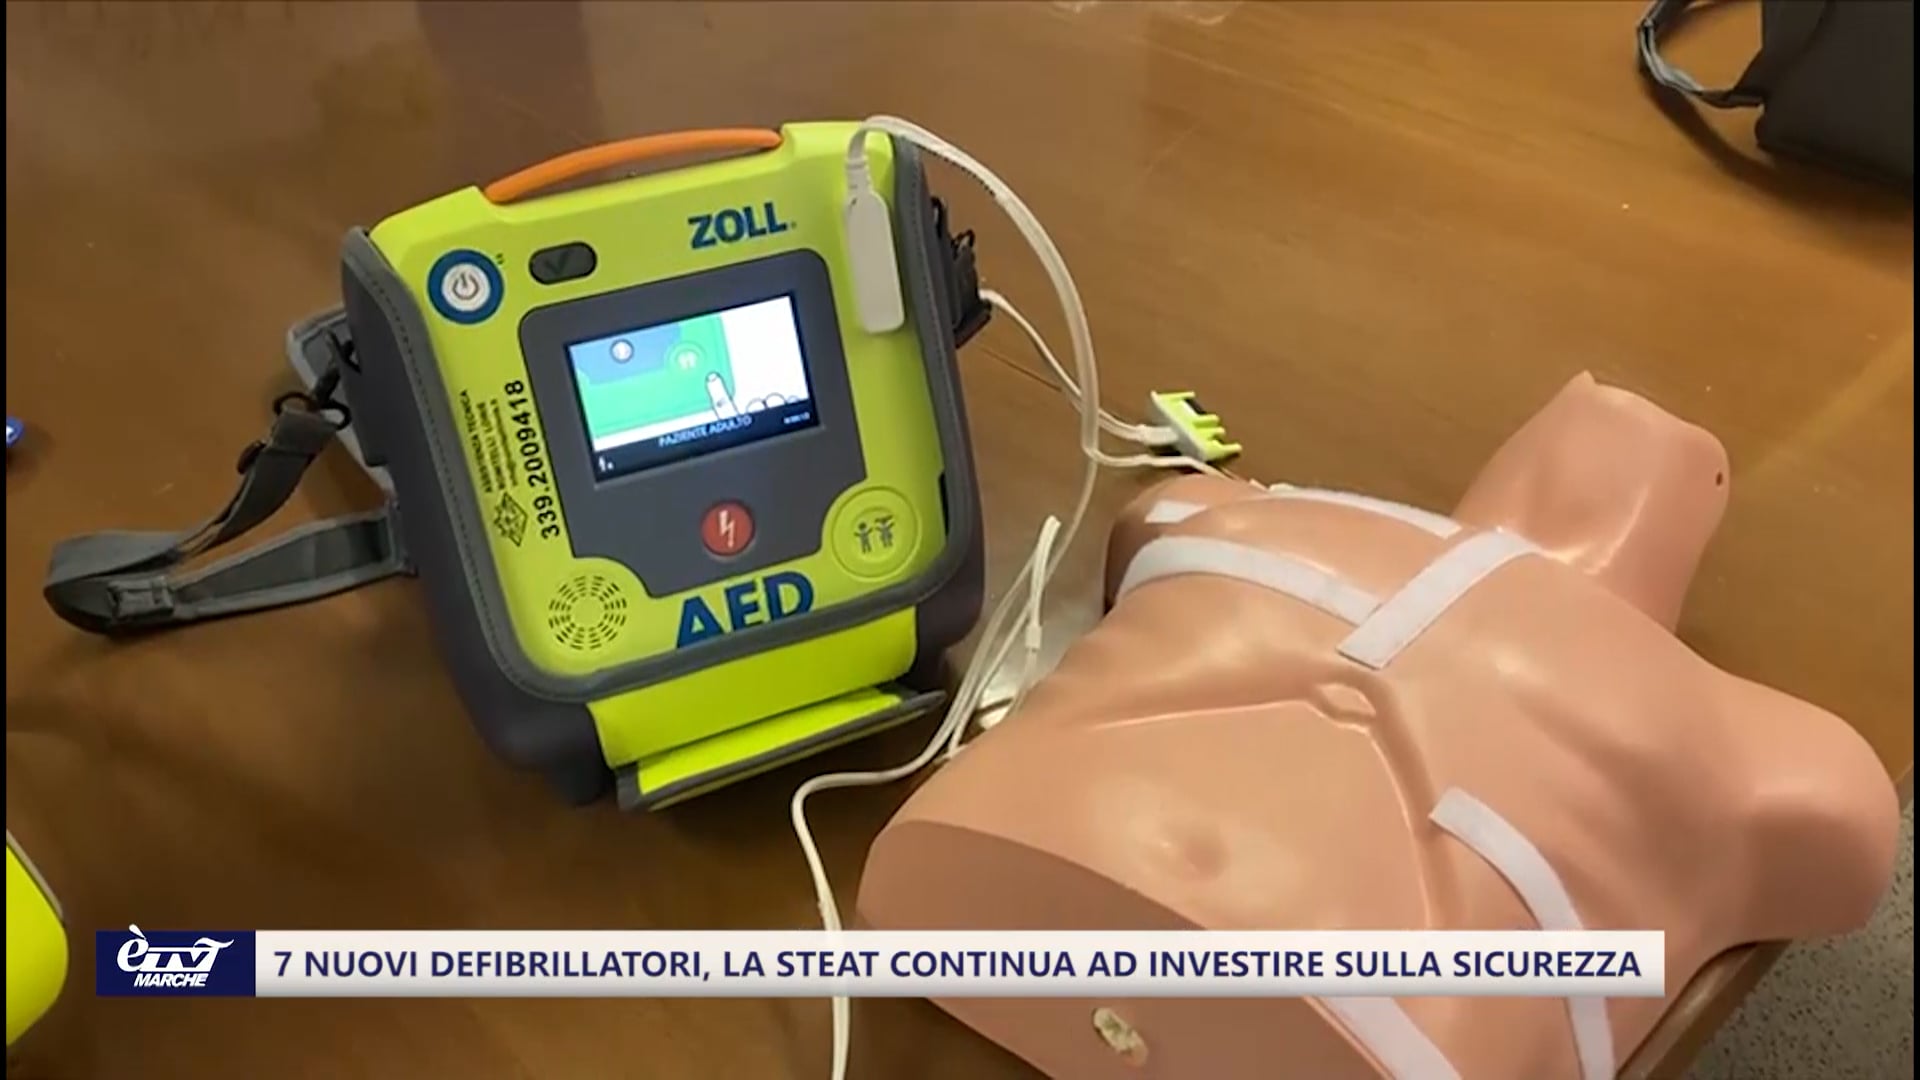 Sette nuovi defibrillatori, Steat continua ad investire sulla sicurezza